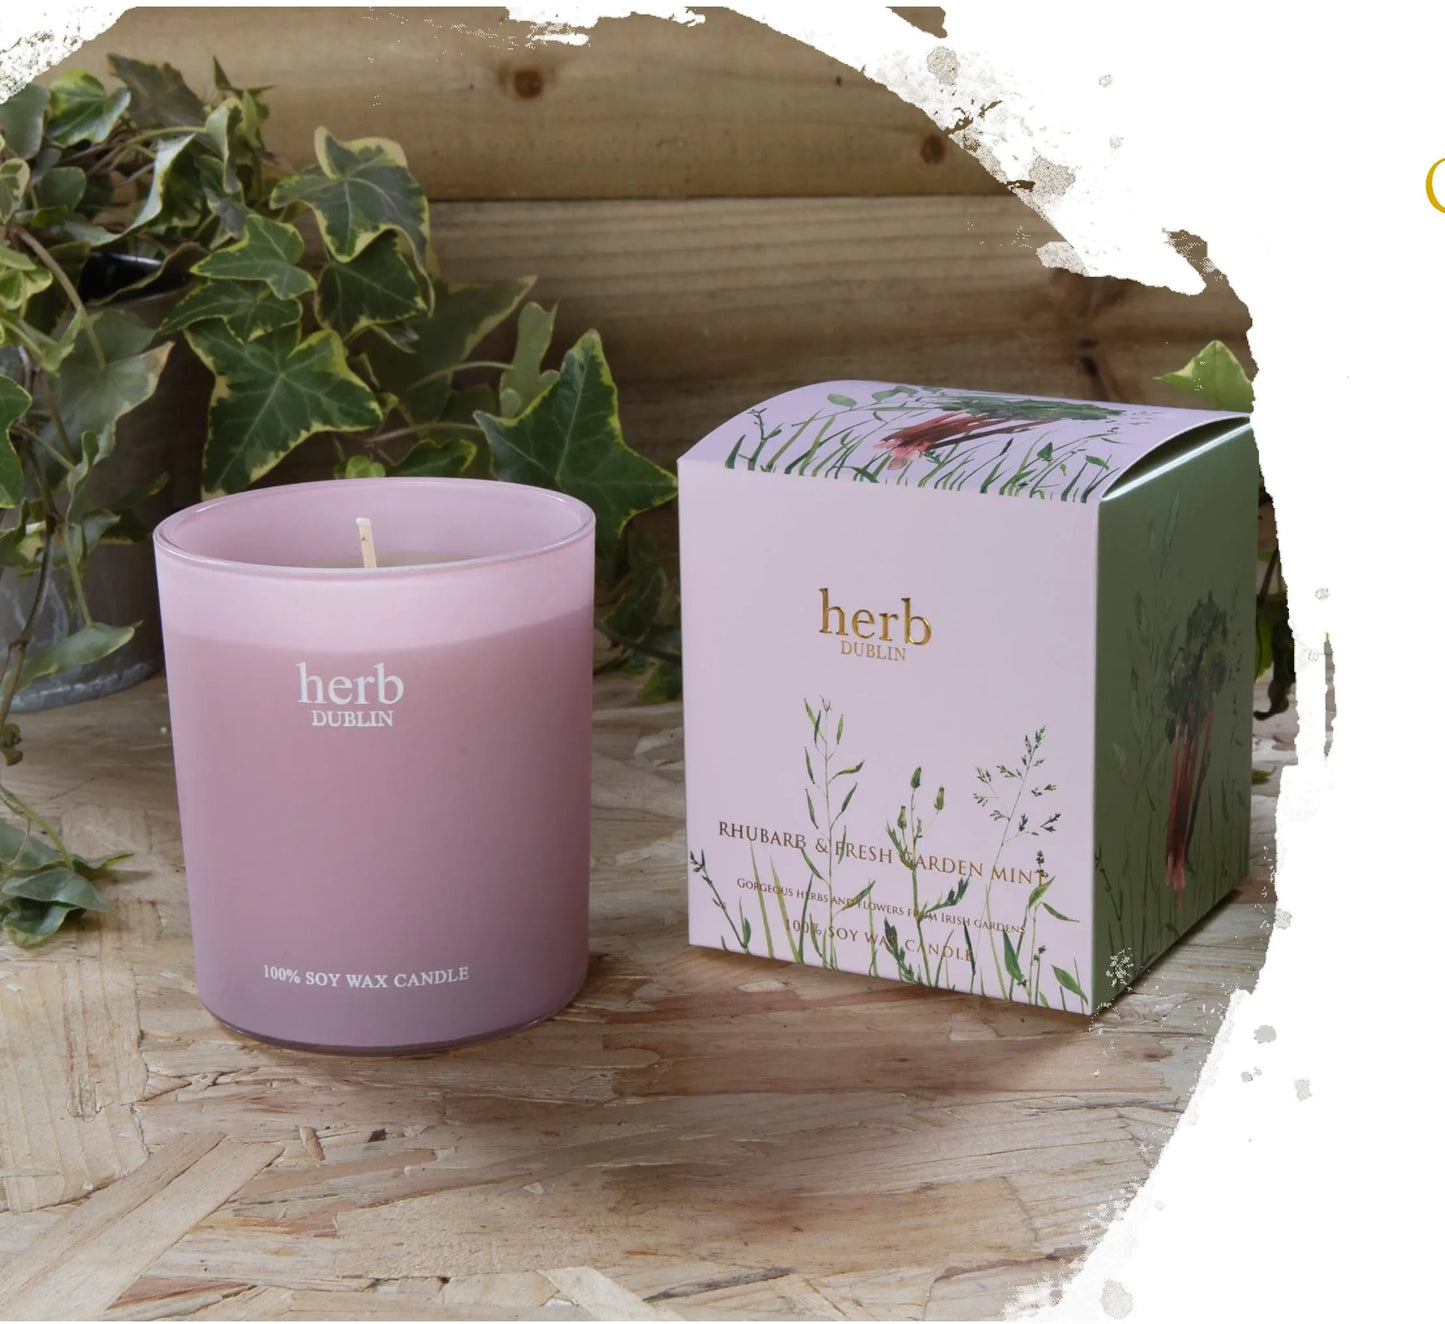 Rhubarb and fresh garden mint- Jar candle.